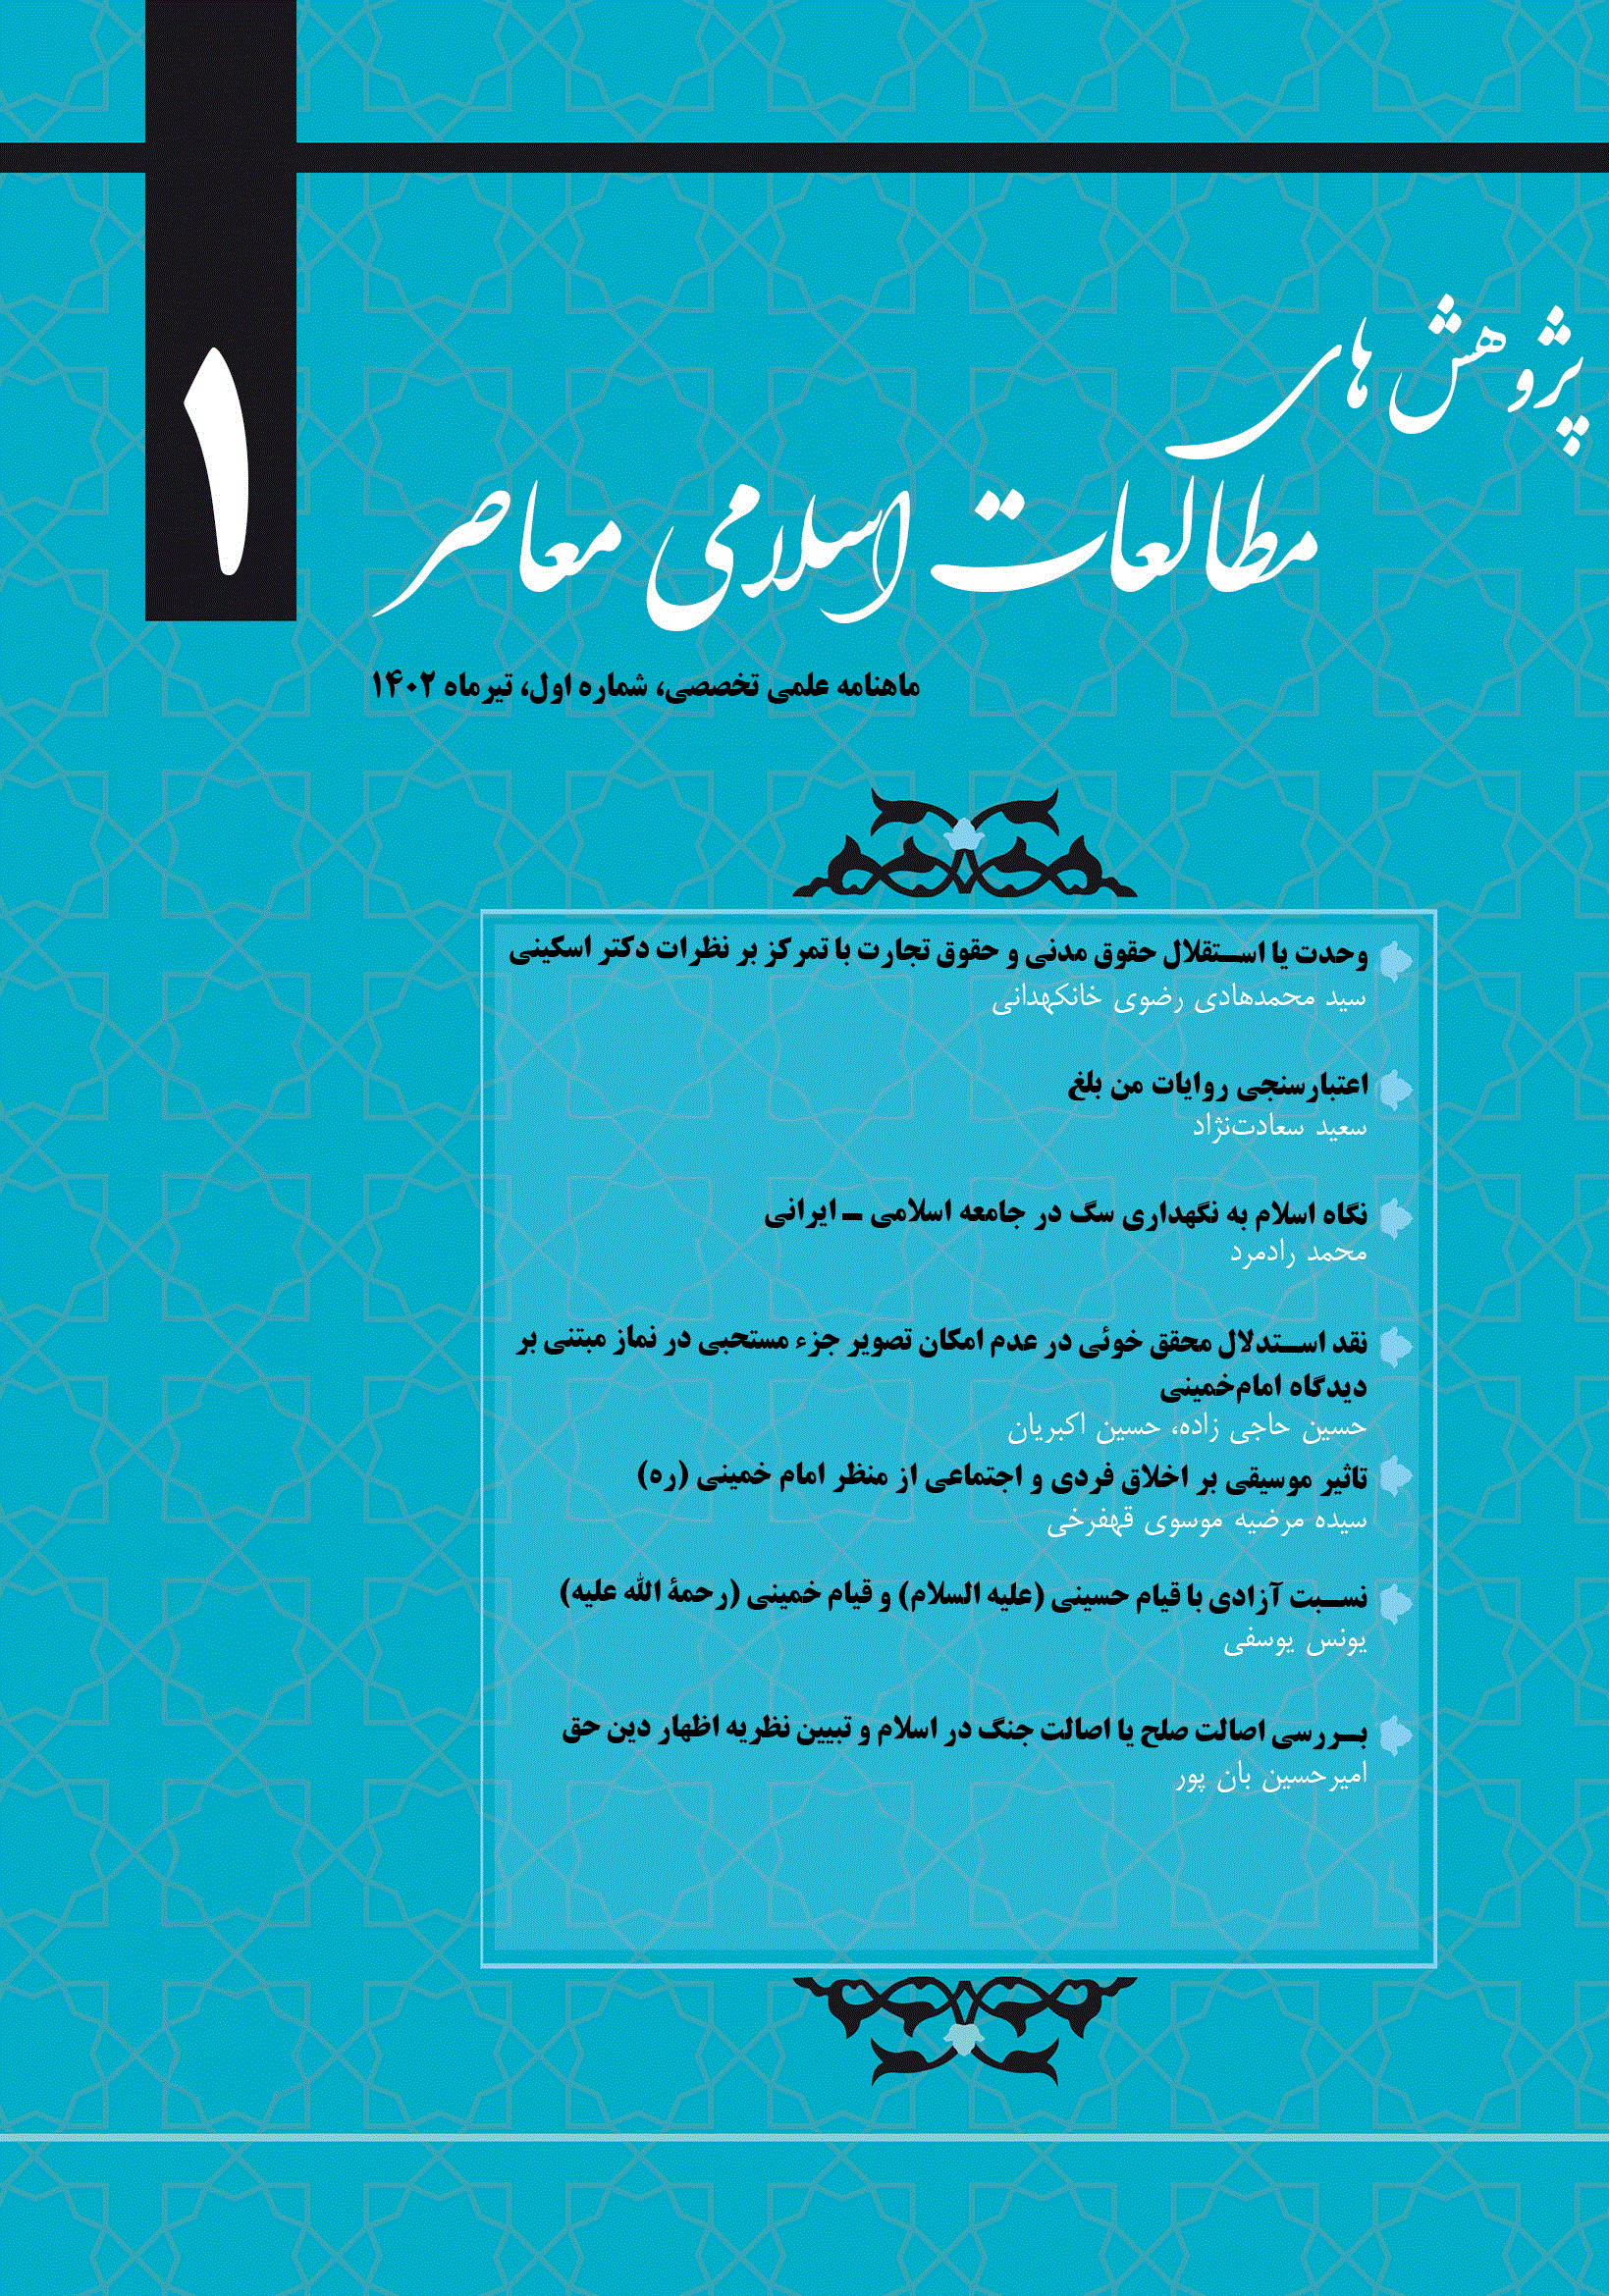 پژوهش های مطالعات اسلامی معاصر - شهریور 1402، دوره اول - شماره 3 (جلد 3)